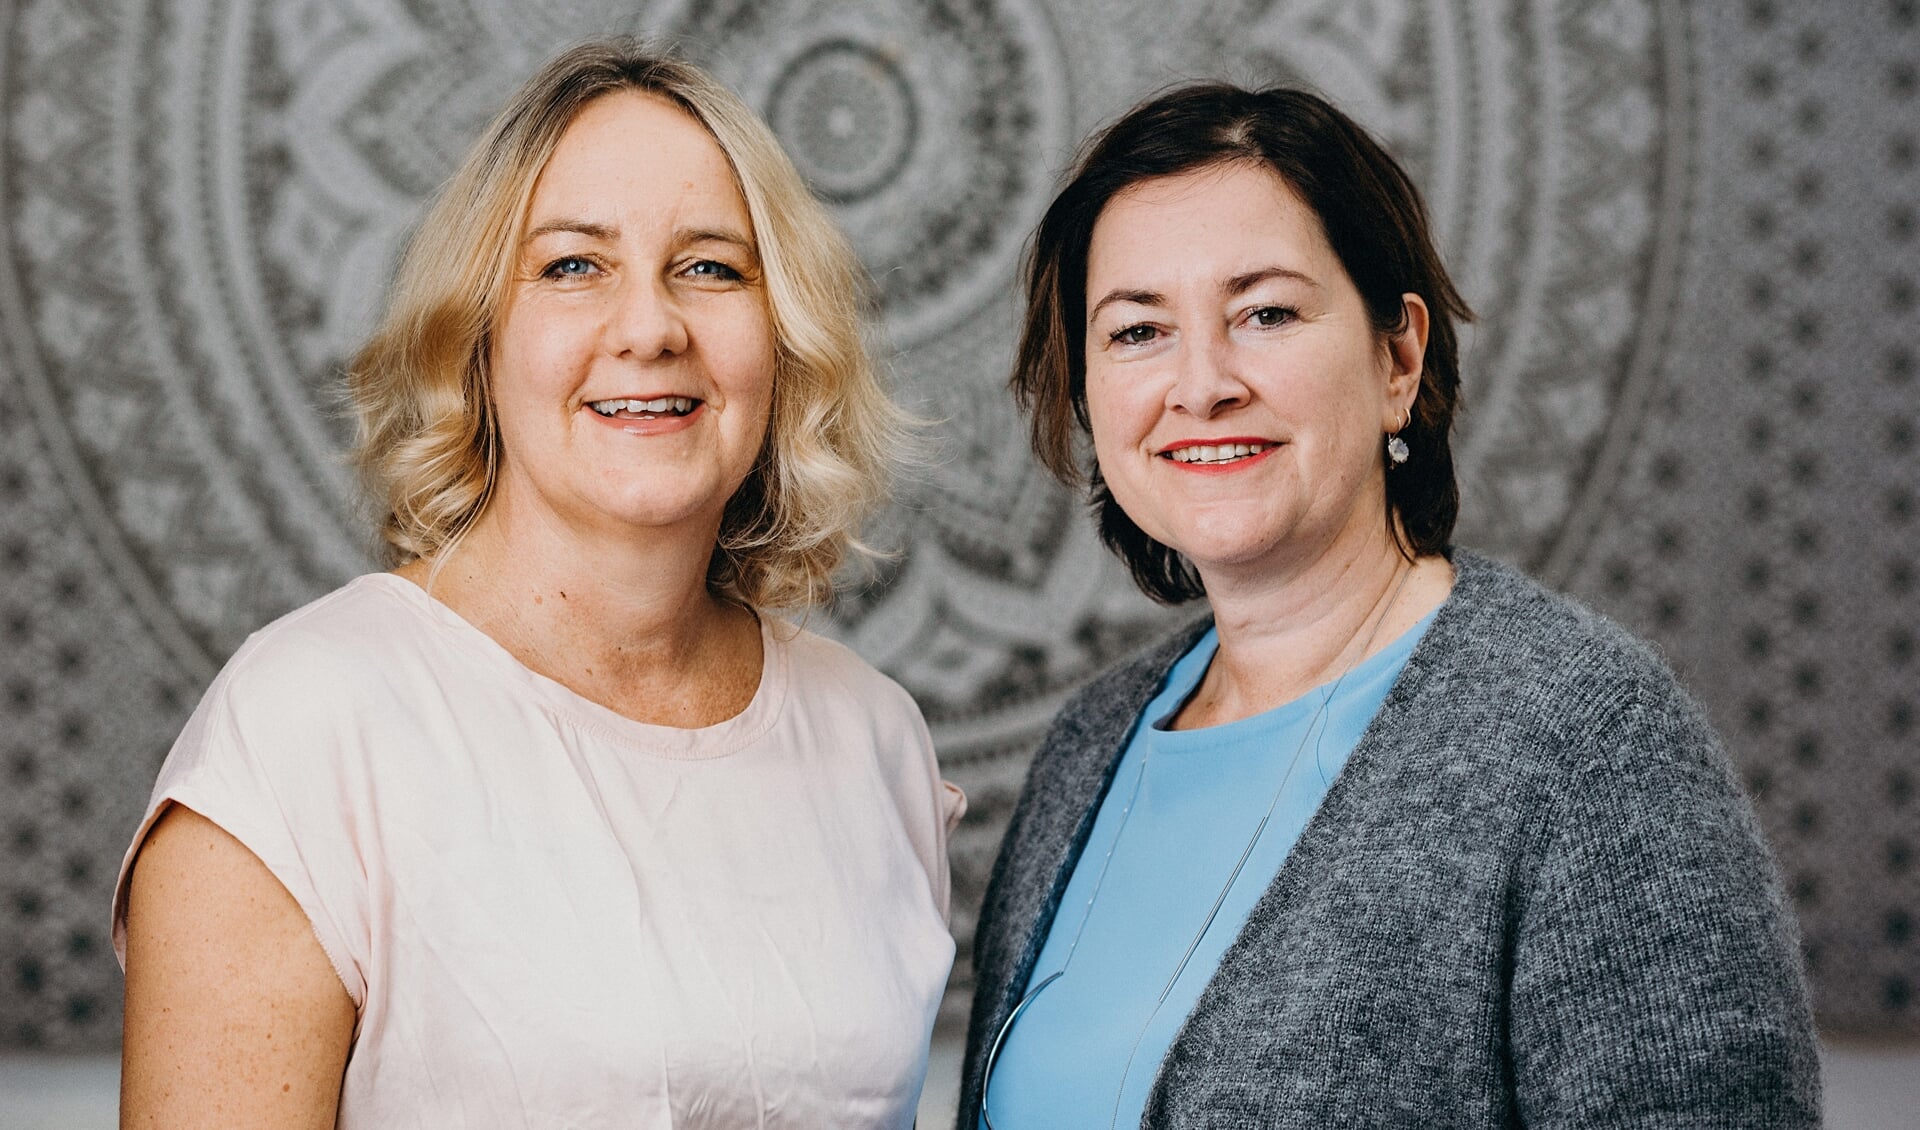 Arbeidspsychologen Midden Nederland wordt gerund door psychologen Marina Wakker (l) & Arienne Klijn.